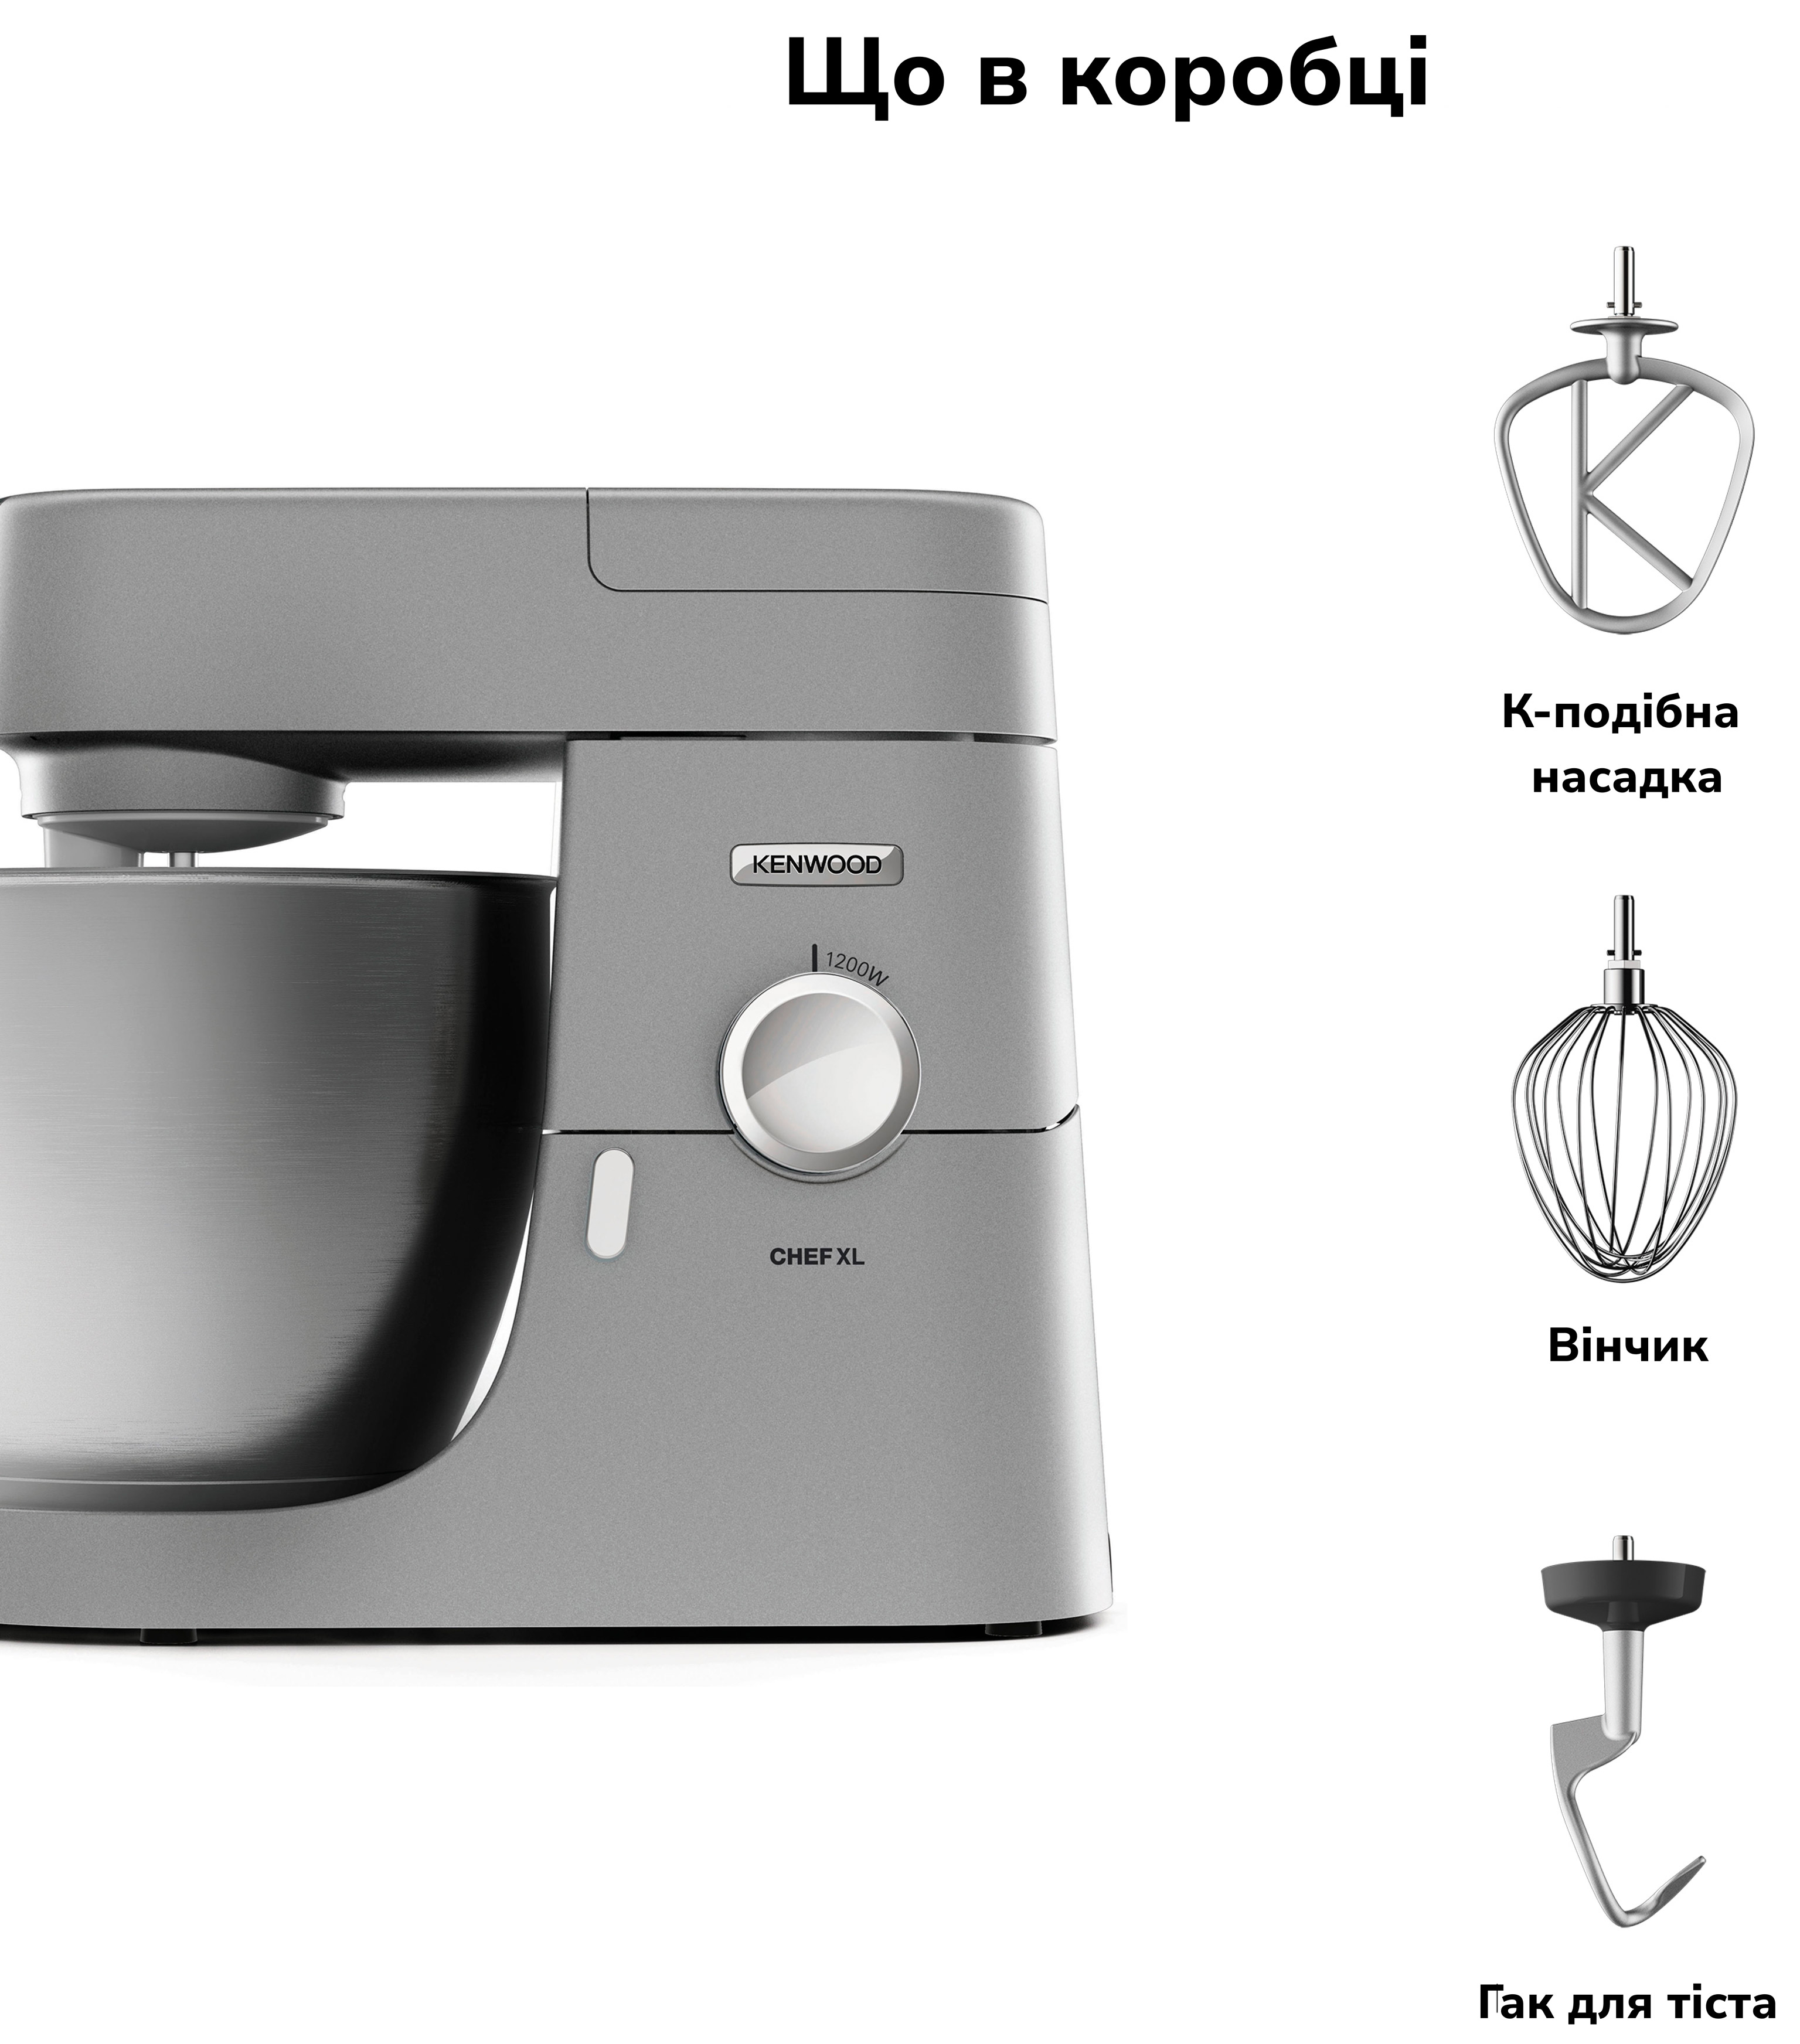 Кухонна машина Kenwood KVL 4100 S Chef XL характеристики - фотографія 7